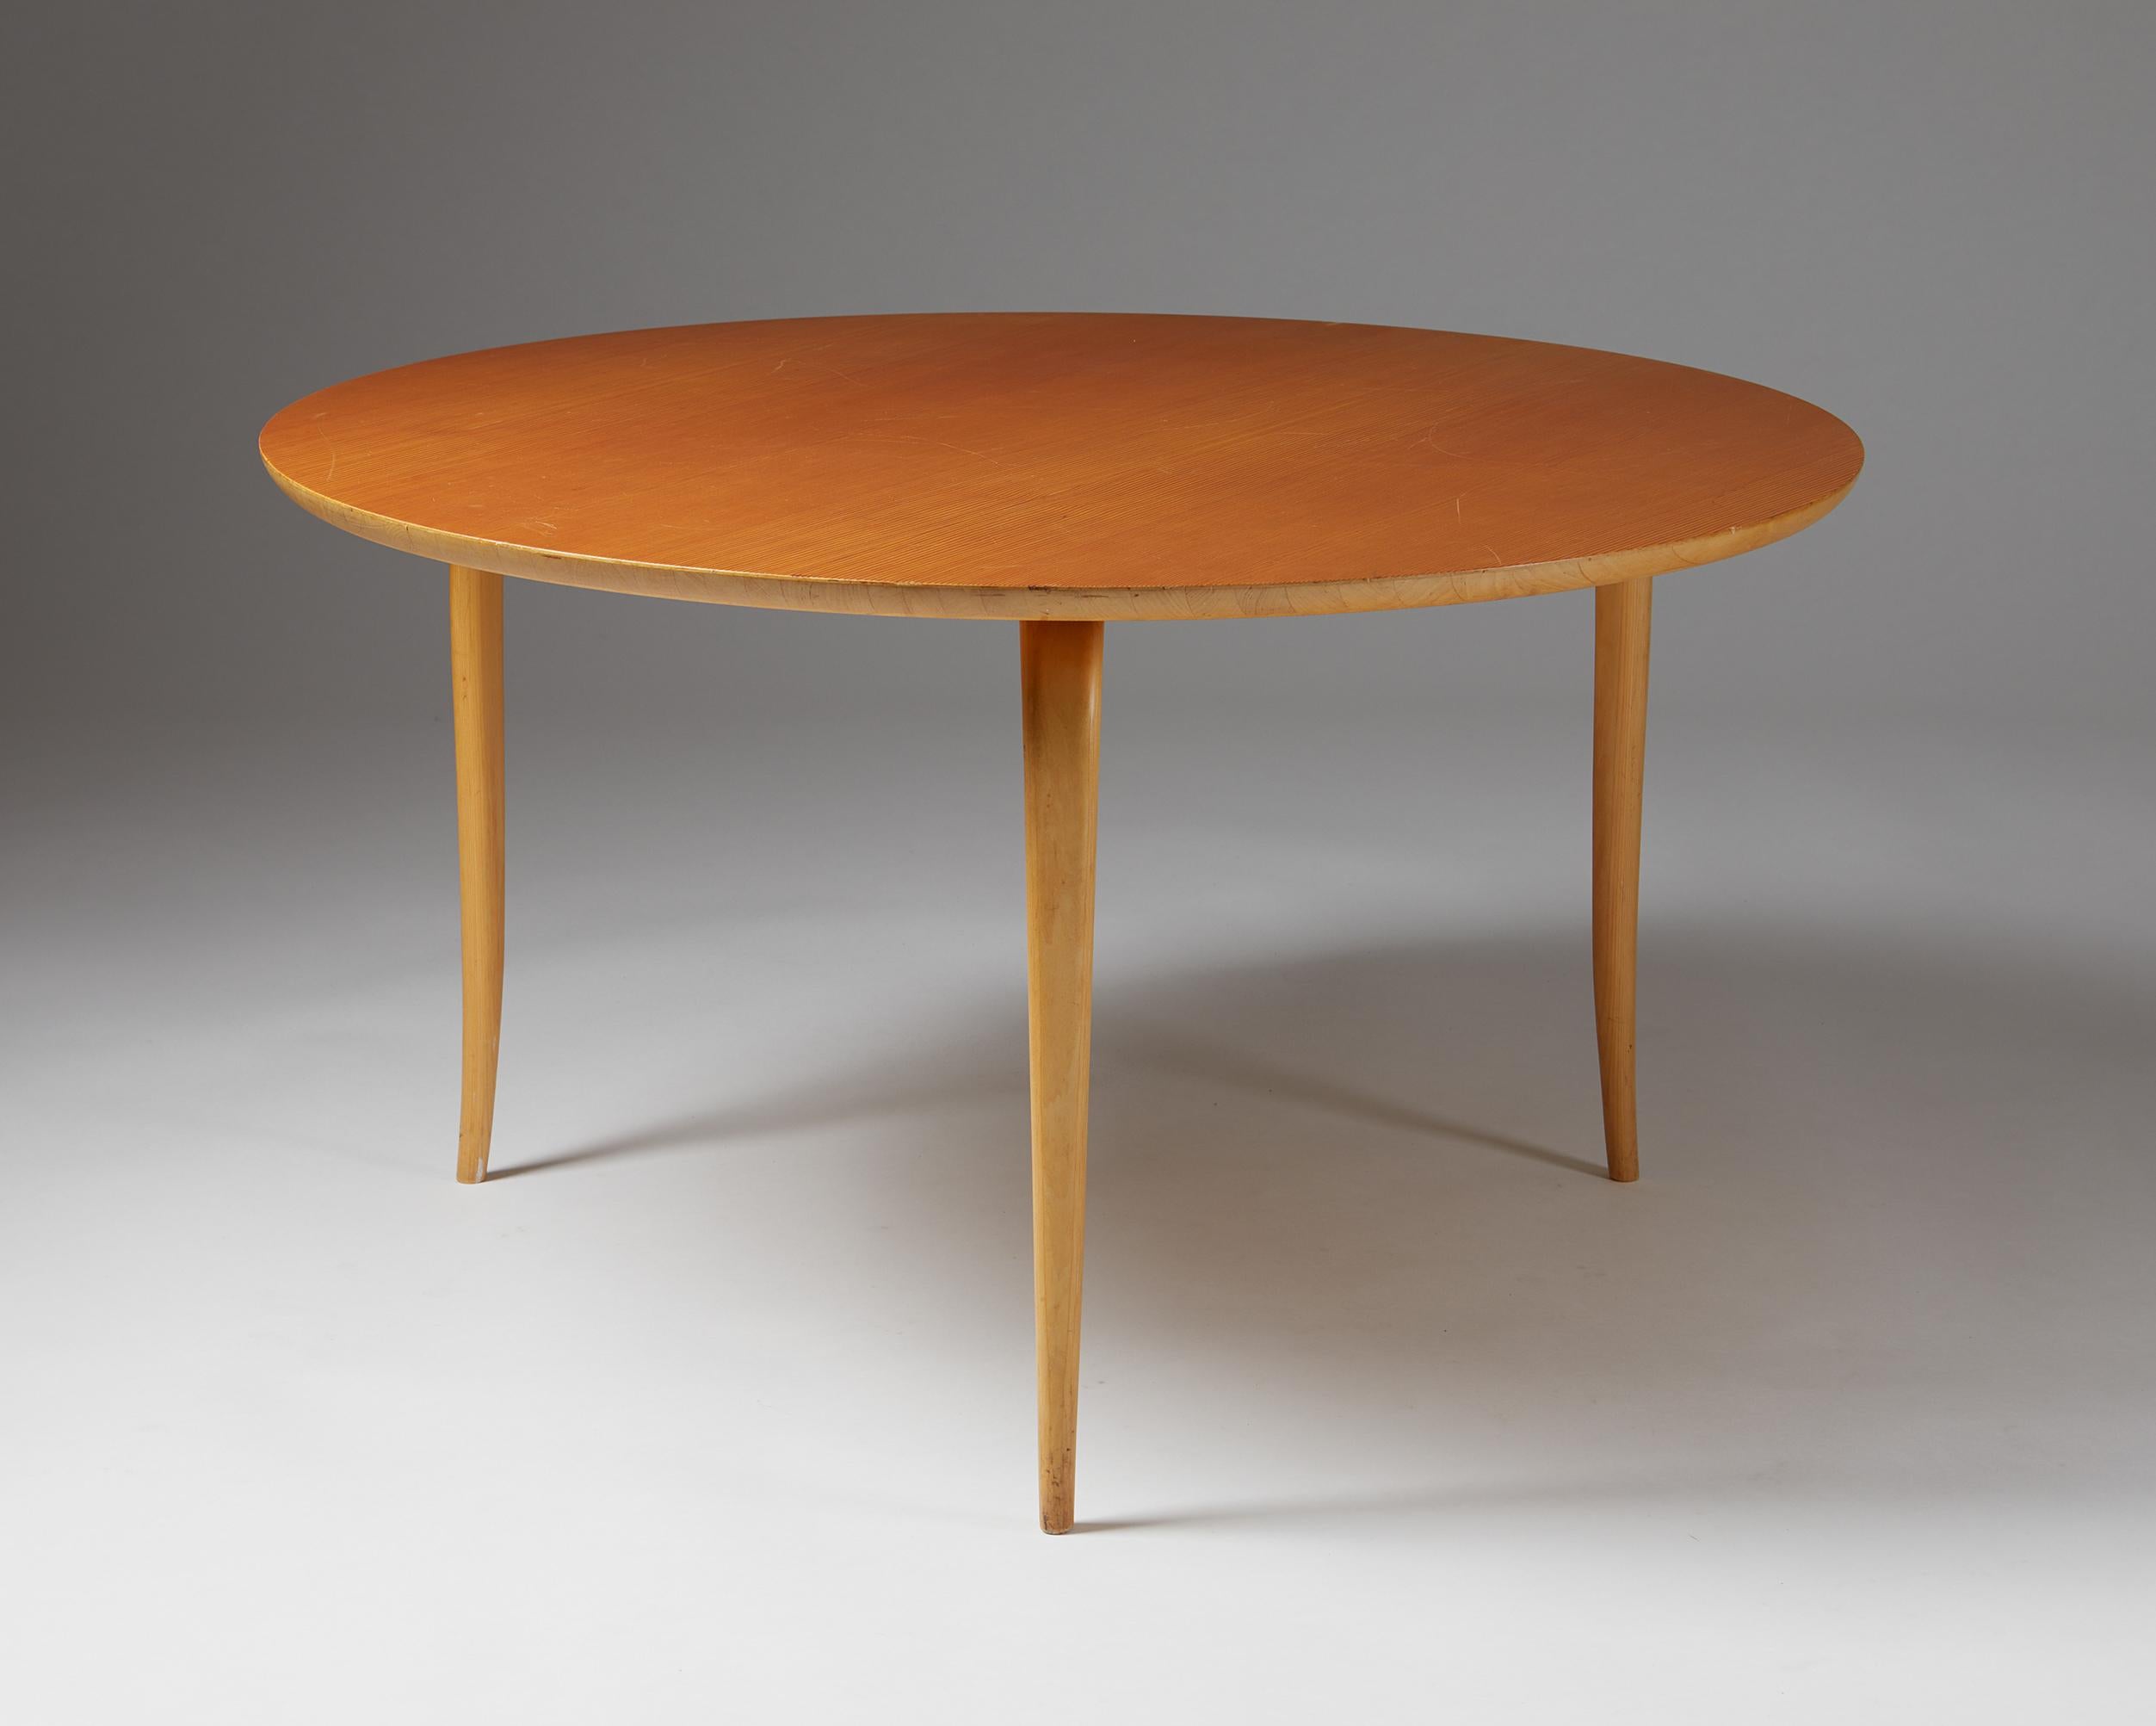 Table d'appoint Annika conçue par Bruno Mathsson pour Karl Mathsson,
Suède. 1967.
Plateau en bouleau et pin de l'Oregon.

Estampillé.

Cette table d'appoint ronde Annika a été fabriquée en 1967 et conçue en 1936 ; elle est fabriquée en bouleau